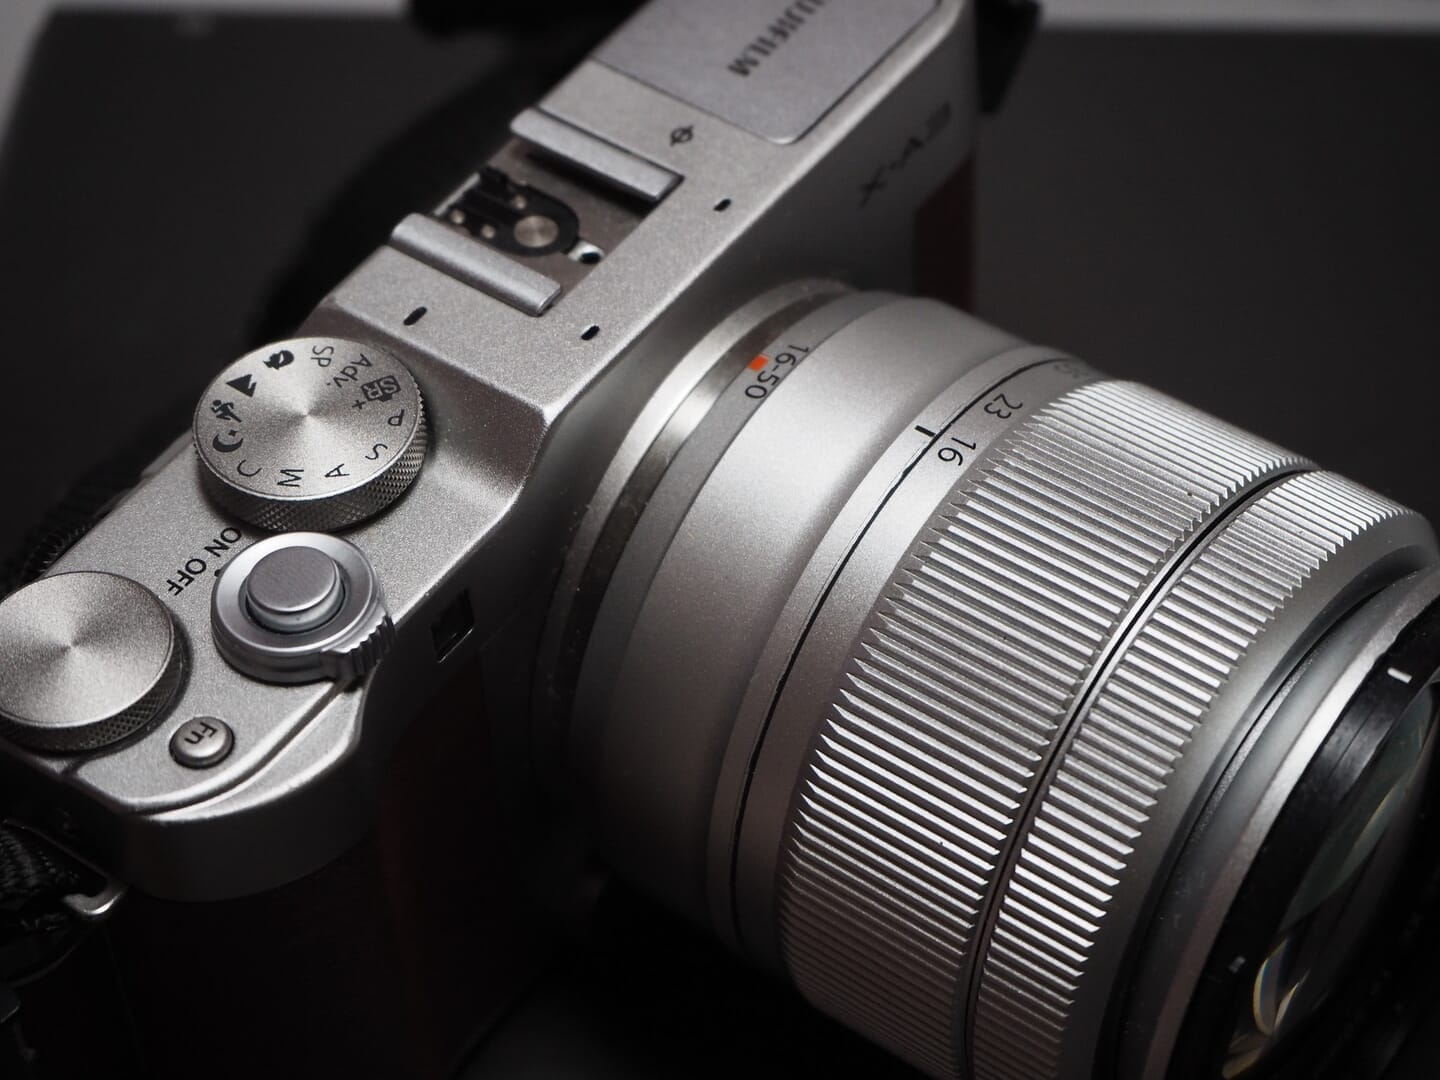 カメラ デジタルカメラ 強力な接写が魅力なミラーレス一眼 FUJIFILM X-A3 | L'7 Records